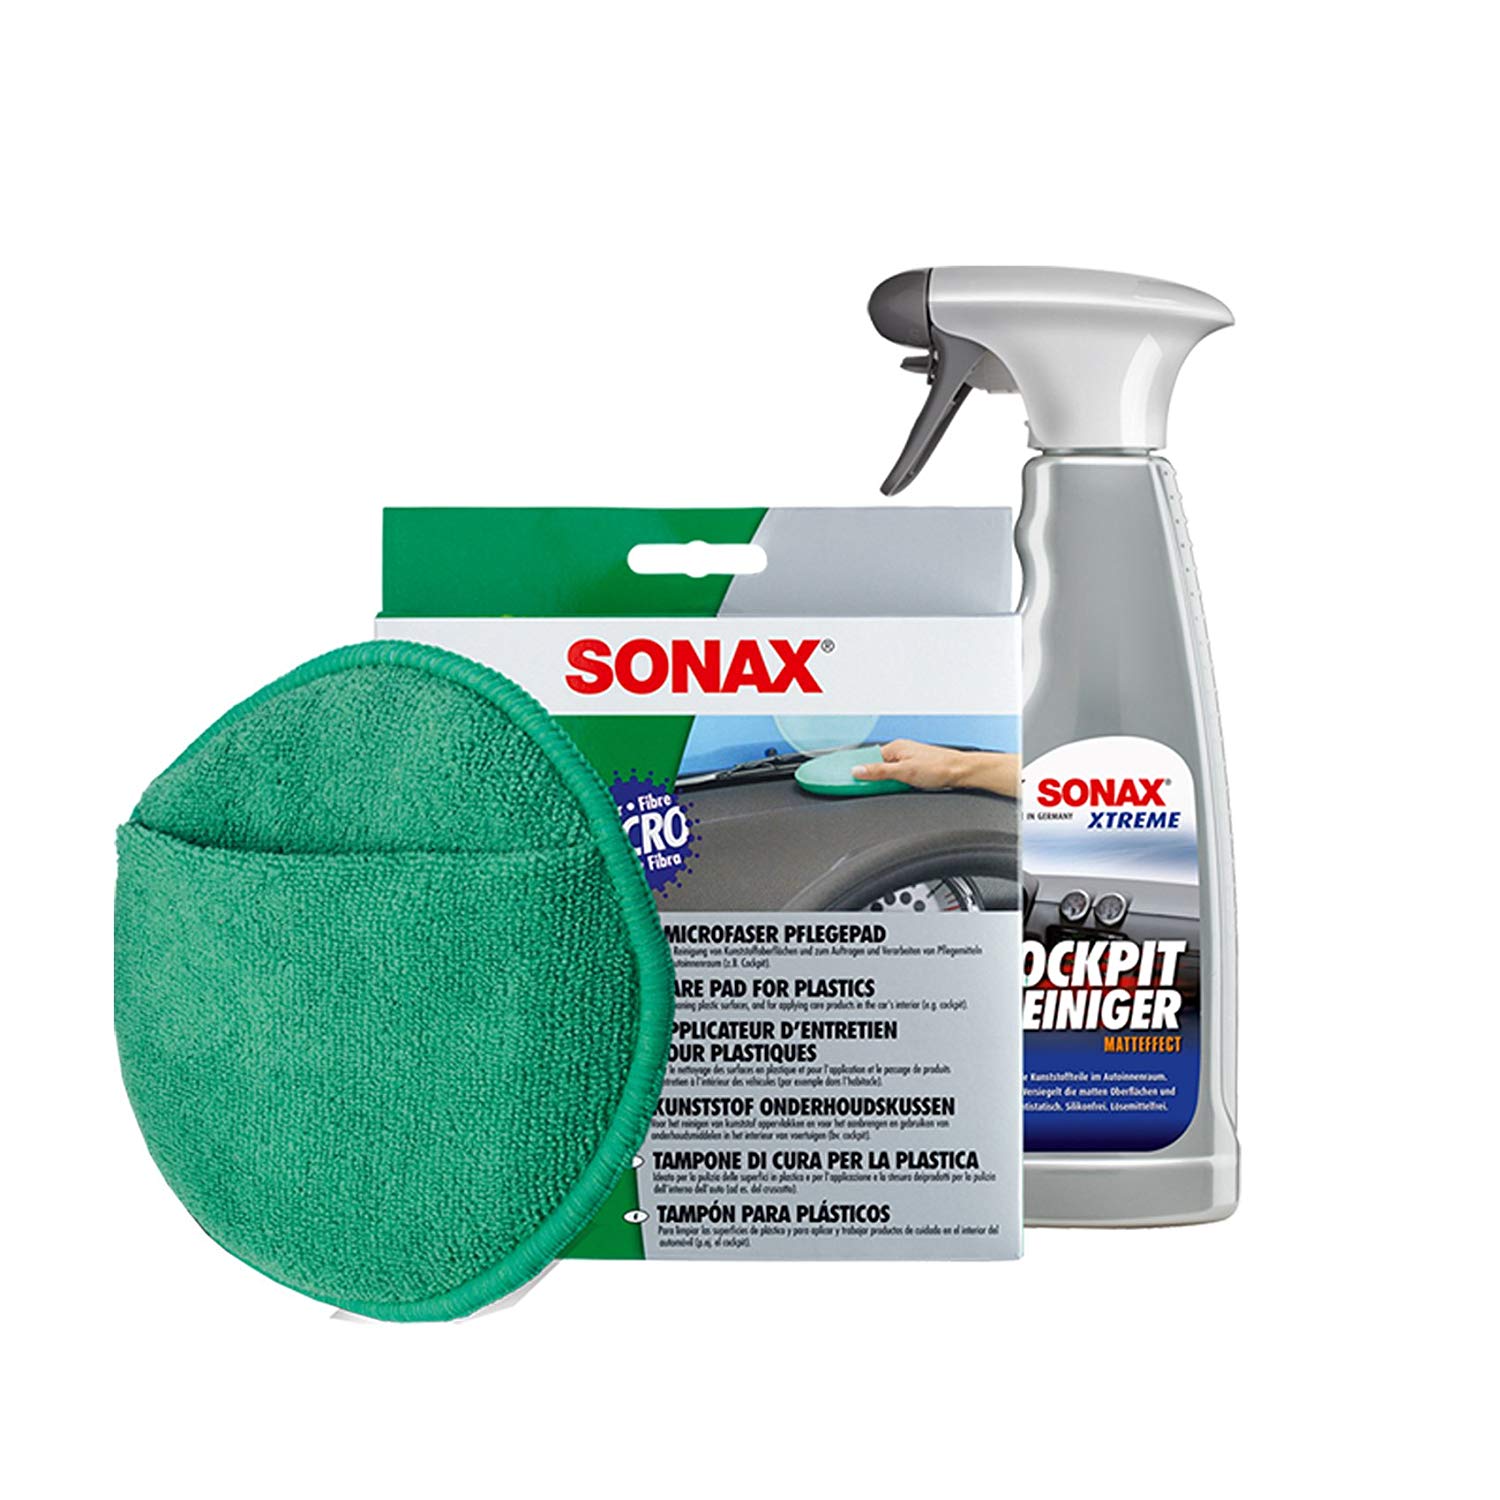 Sonax Xtreme CockpitReiniger Matteffect inkl Microfaser PflegePad SET